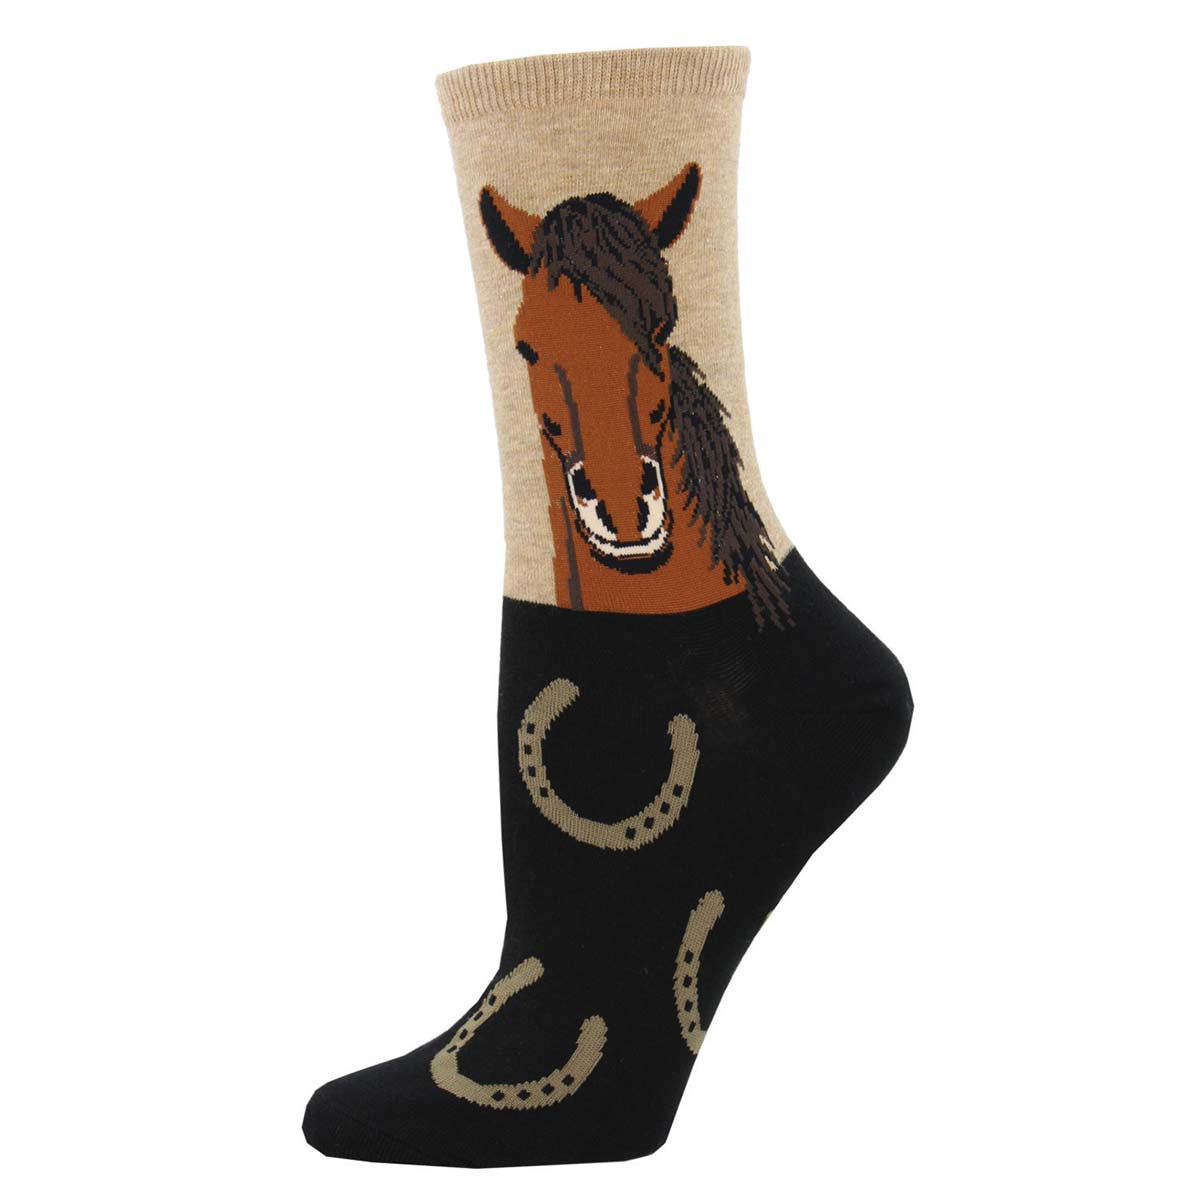 Horse Portrait Socks